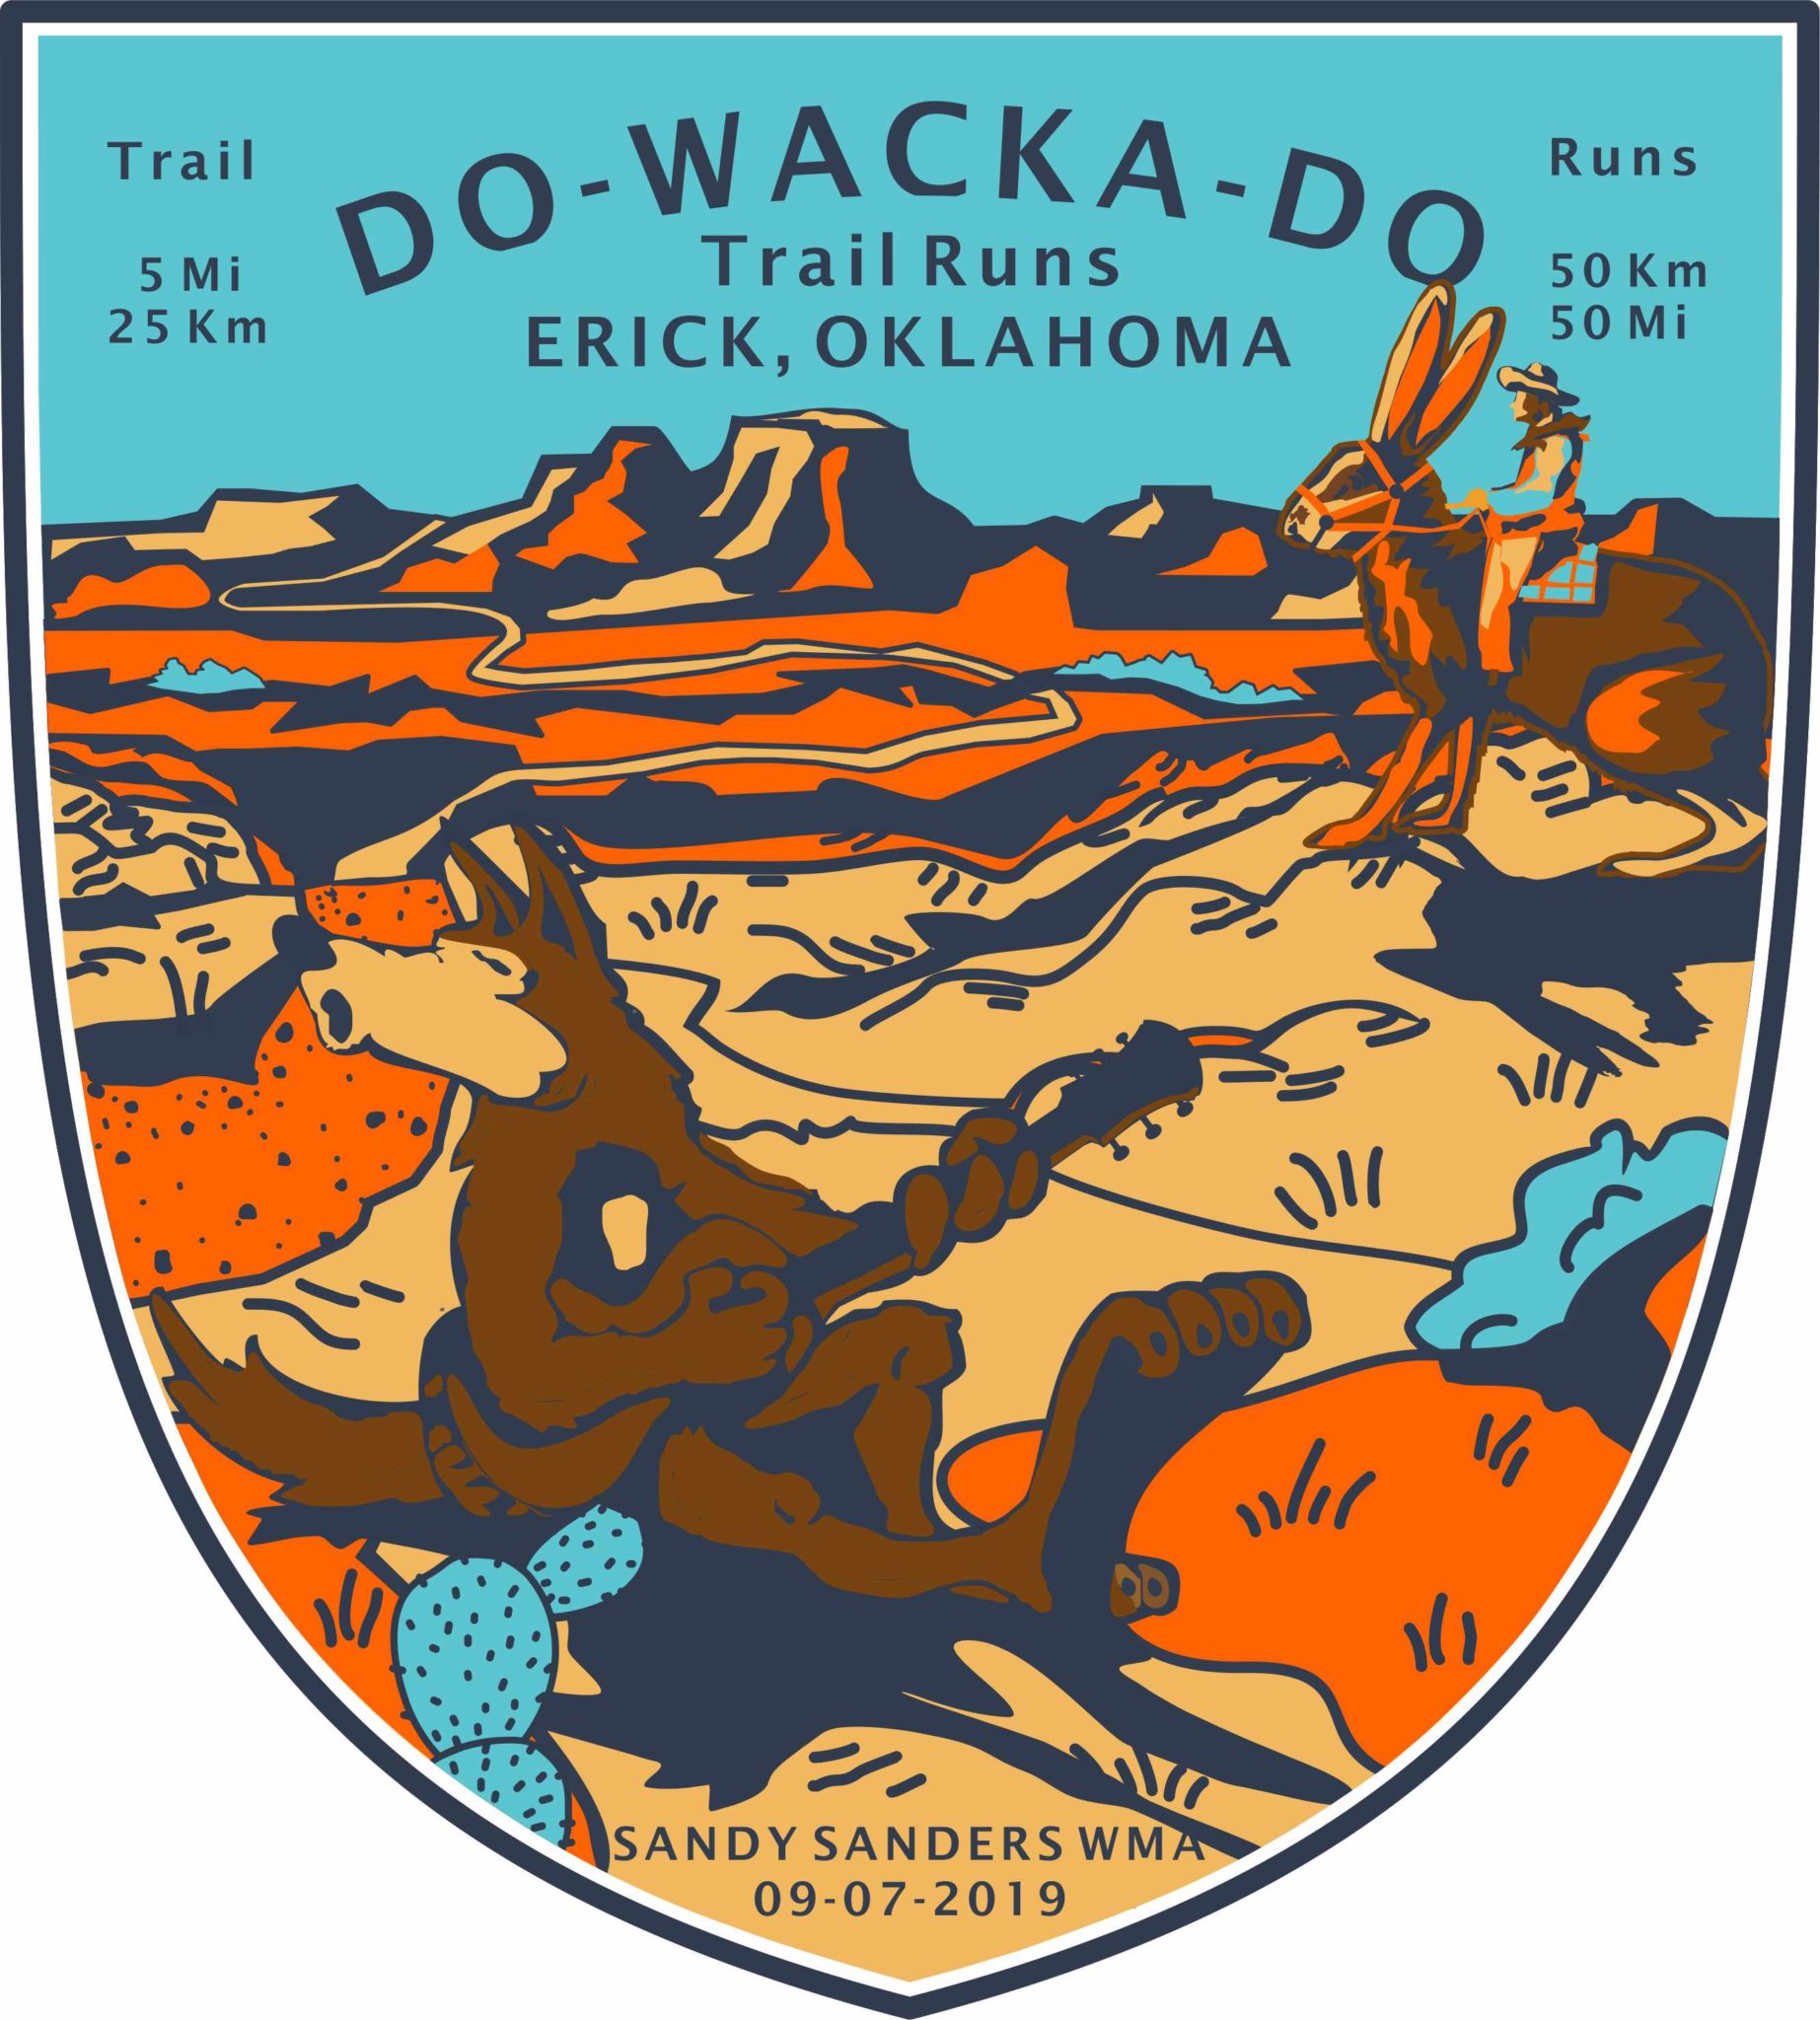 Do-Wacka-Do Trail Runs logo on RaceRaves